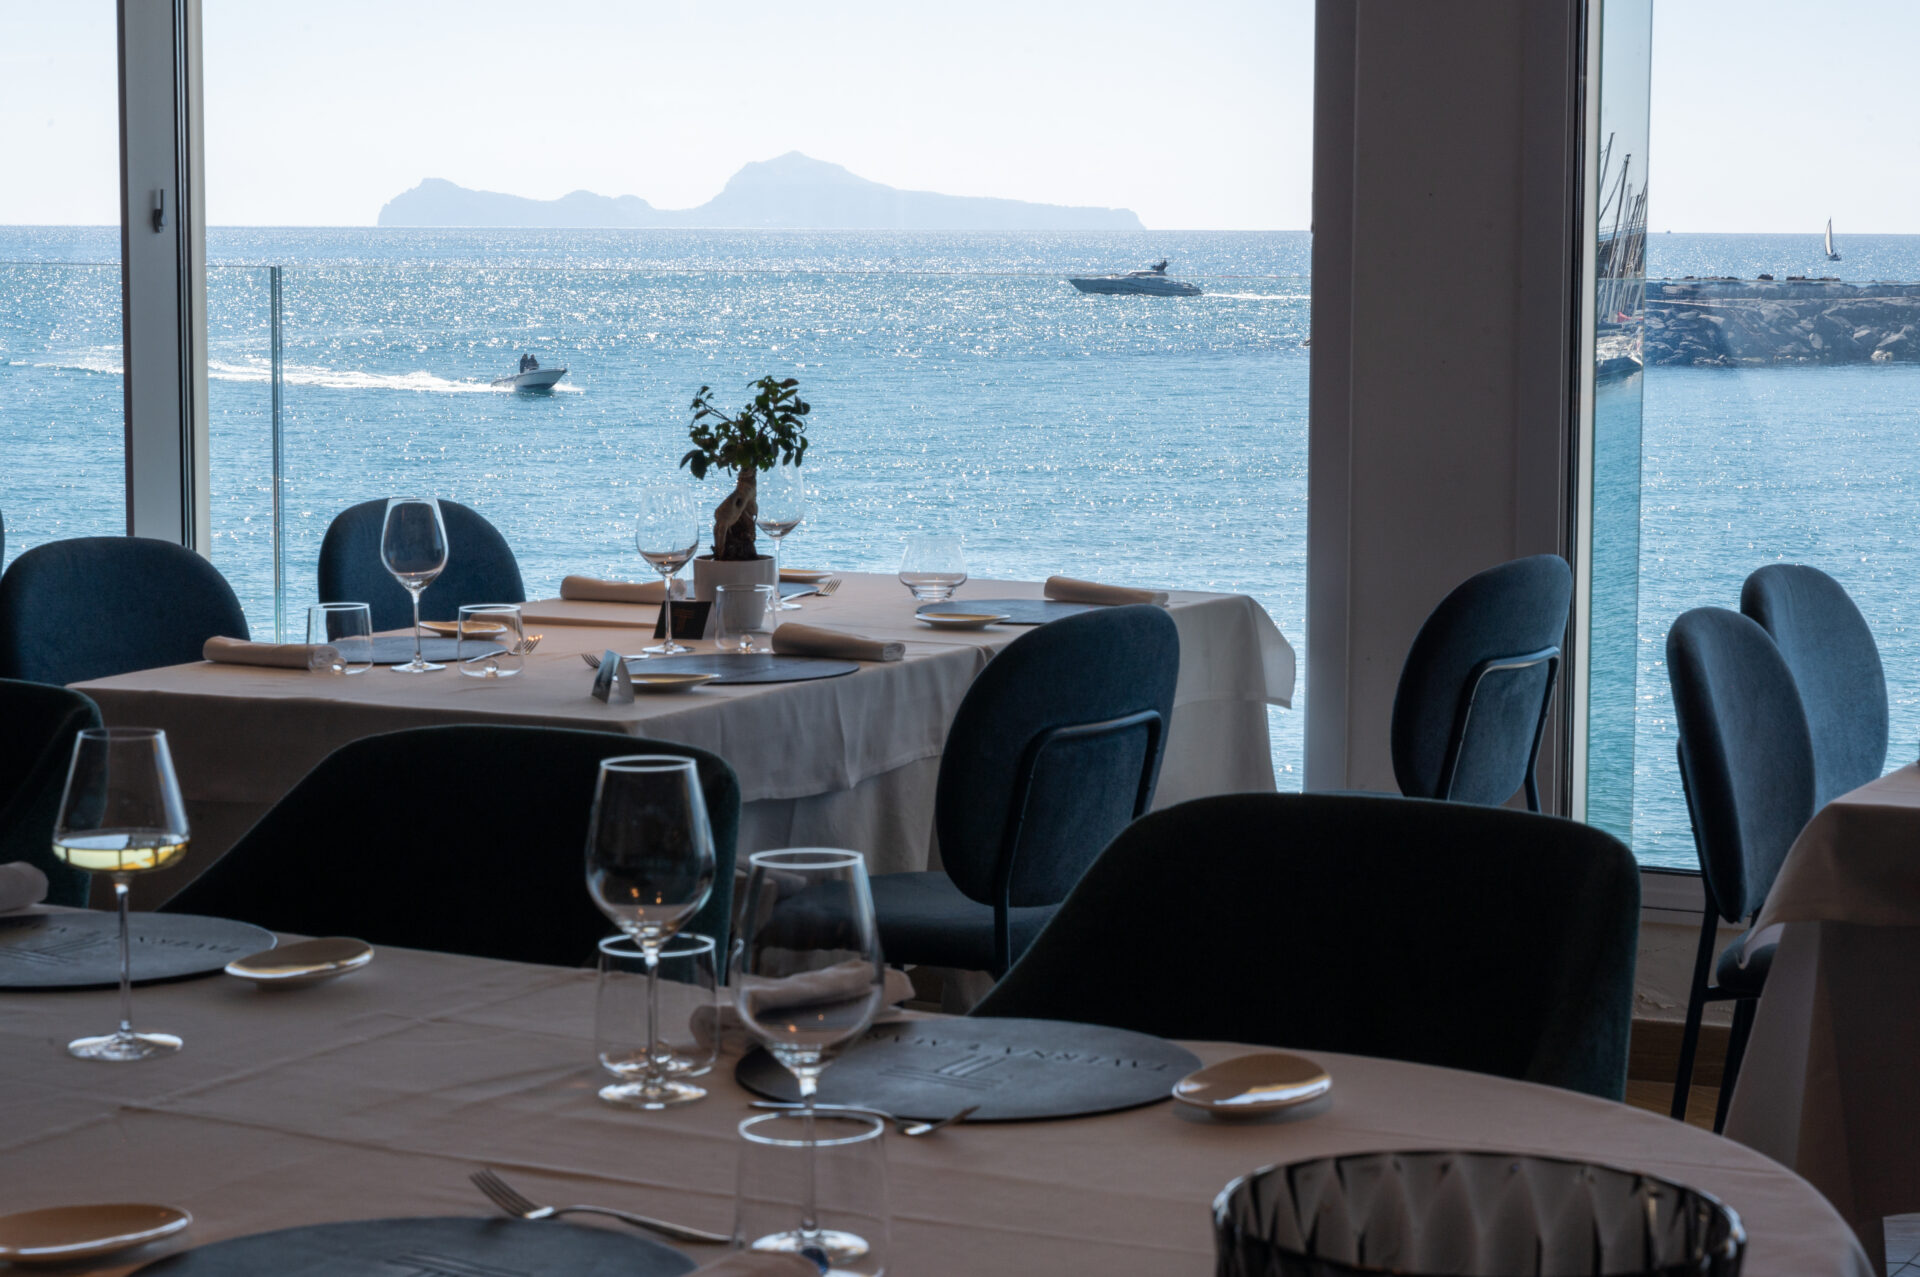 Taverna 'e Mare, i profumi del Mediterraneo in tavola con vista mozzafiato sul Golfo